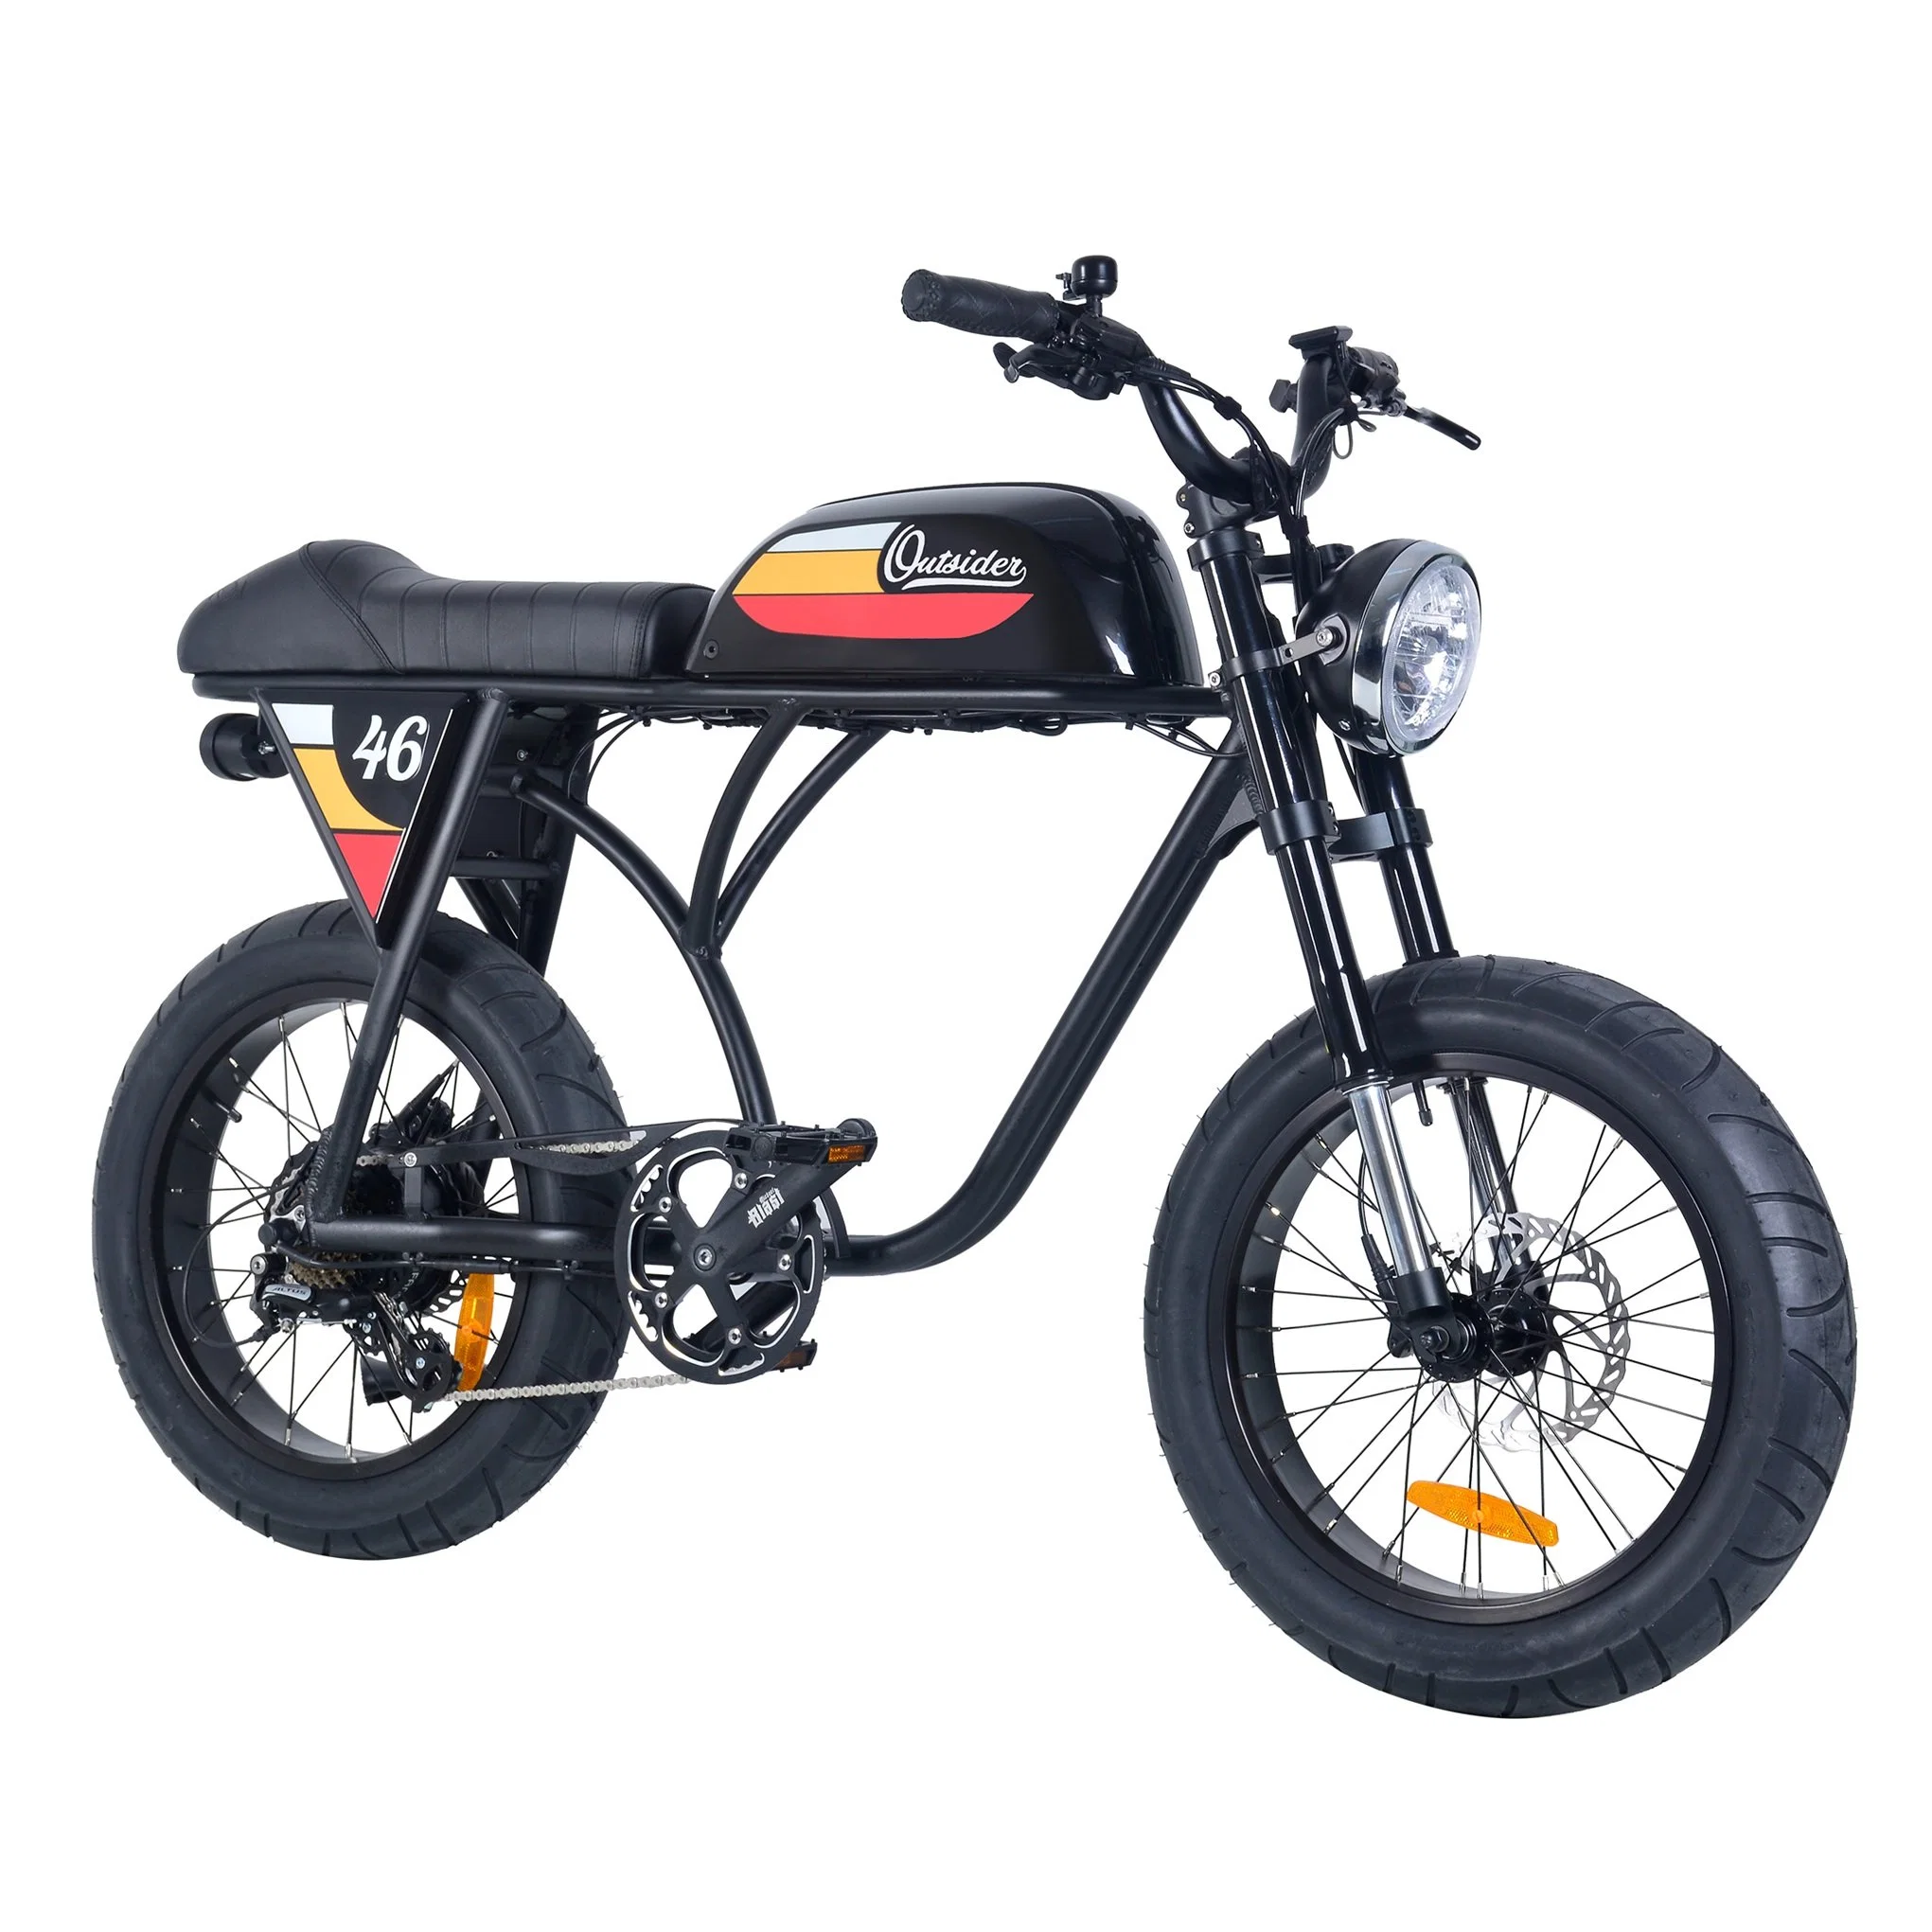 350W Ebike 36V 13AH литиевая батарея электрический велосипед с маркировкой CE/EN15194 электрический велосипед